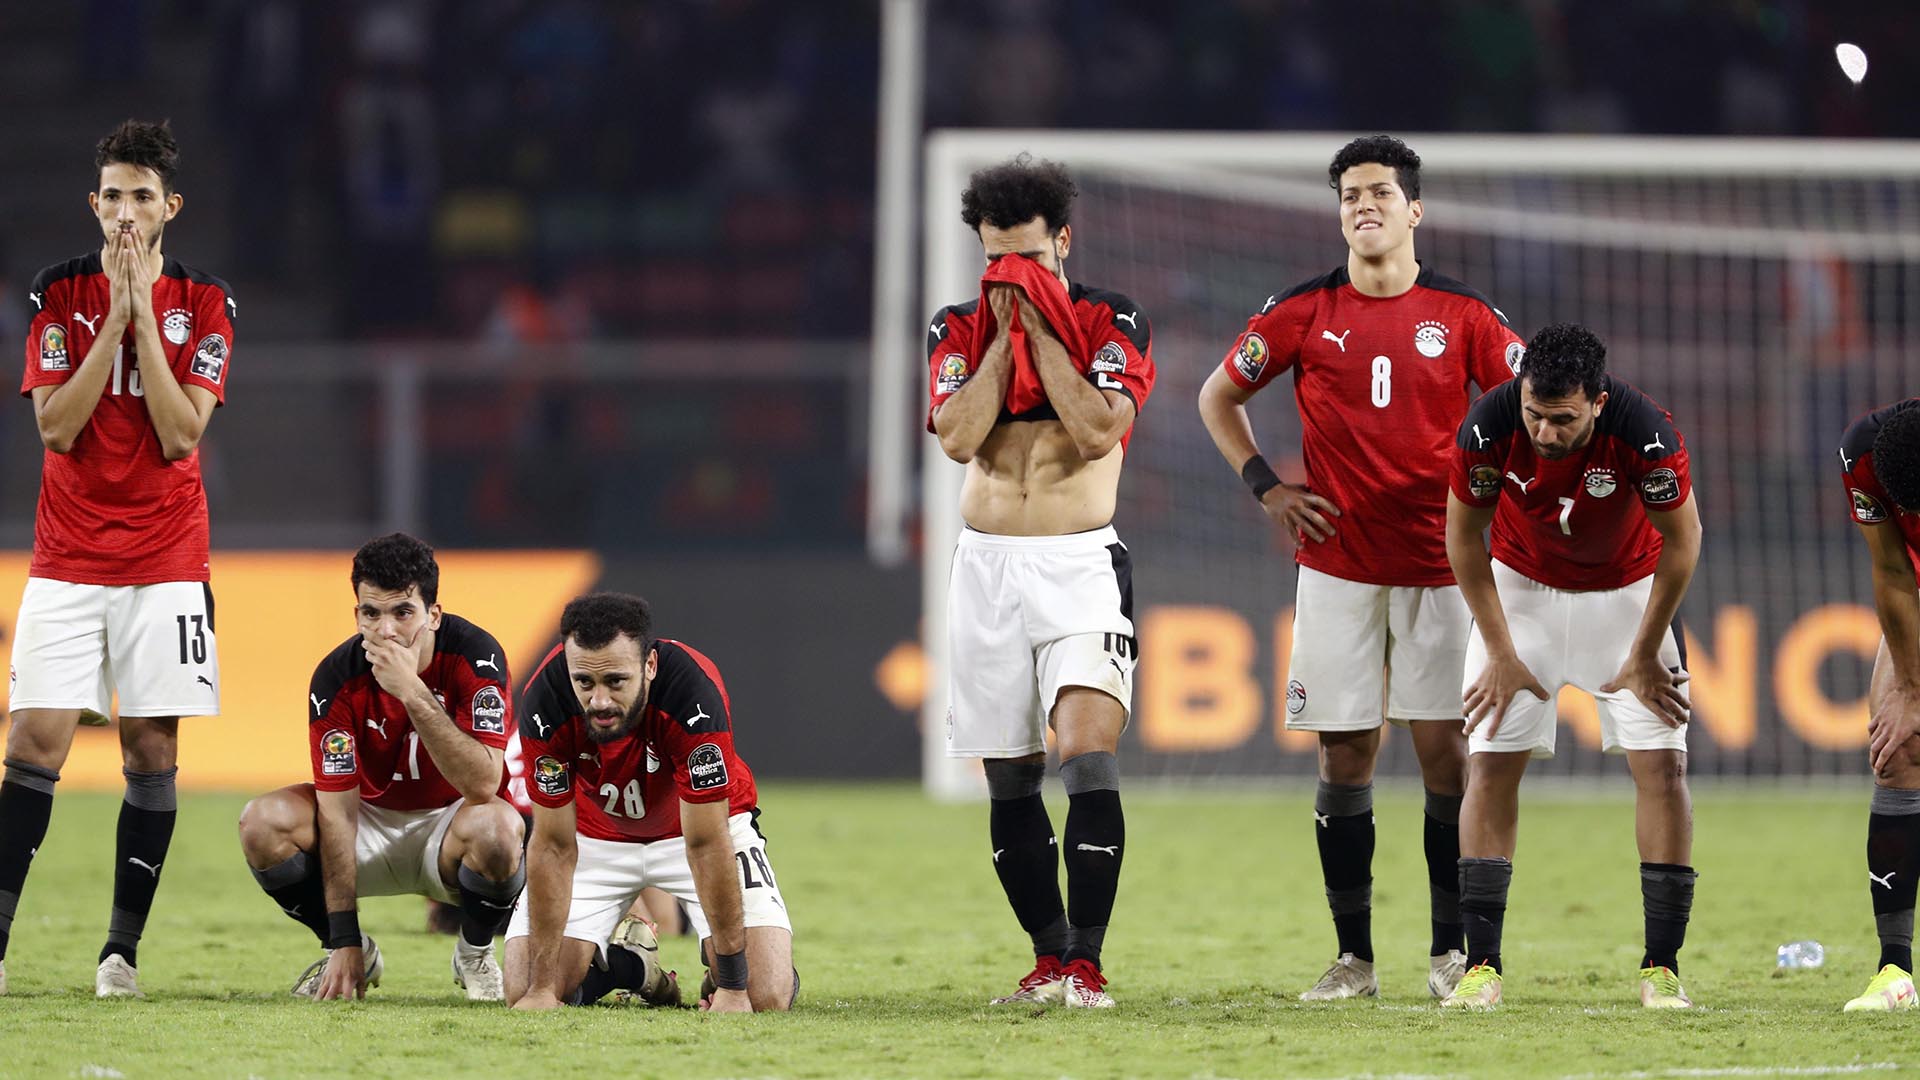 La historia convierte a Egipto en favorita. Ha sido campeona en siete ocasiones y en otras nueve ha alcanzado, como mínimo, la semifinal. No obstante, vive horas bajas. Solo cuatro de los seleccionados juegan en la élite del fútbol europeo.